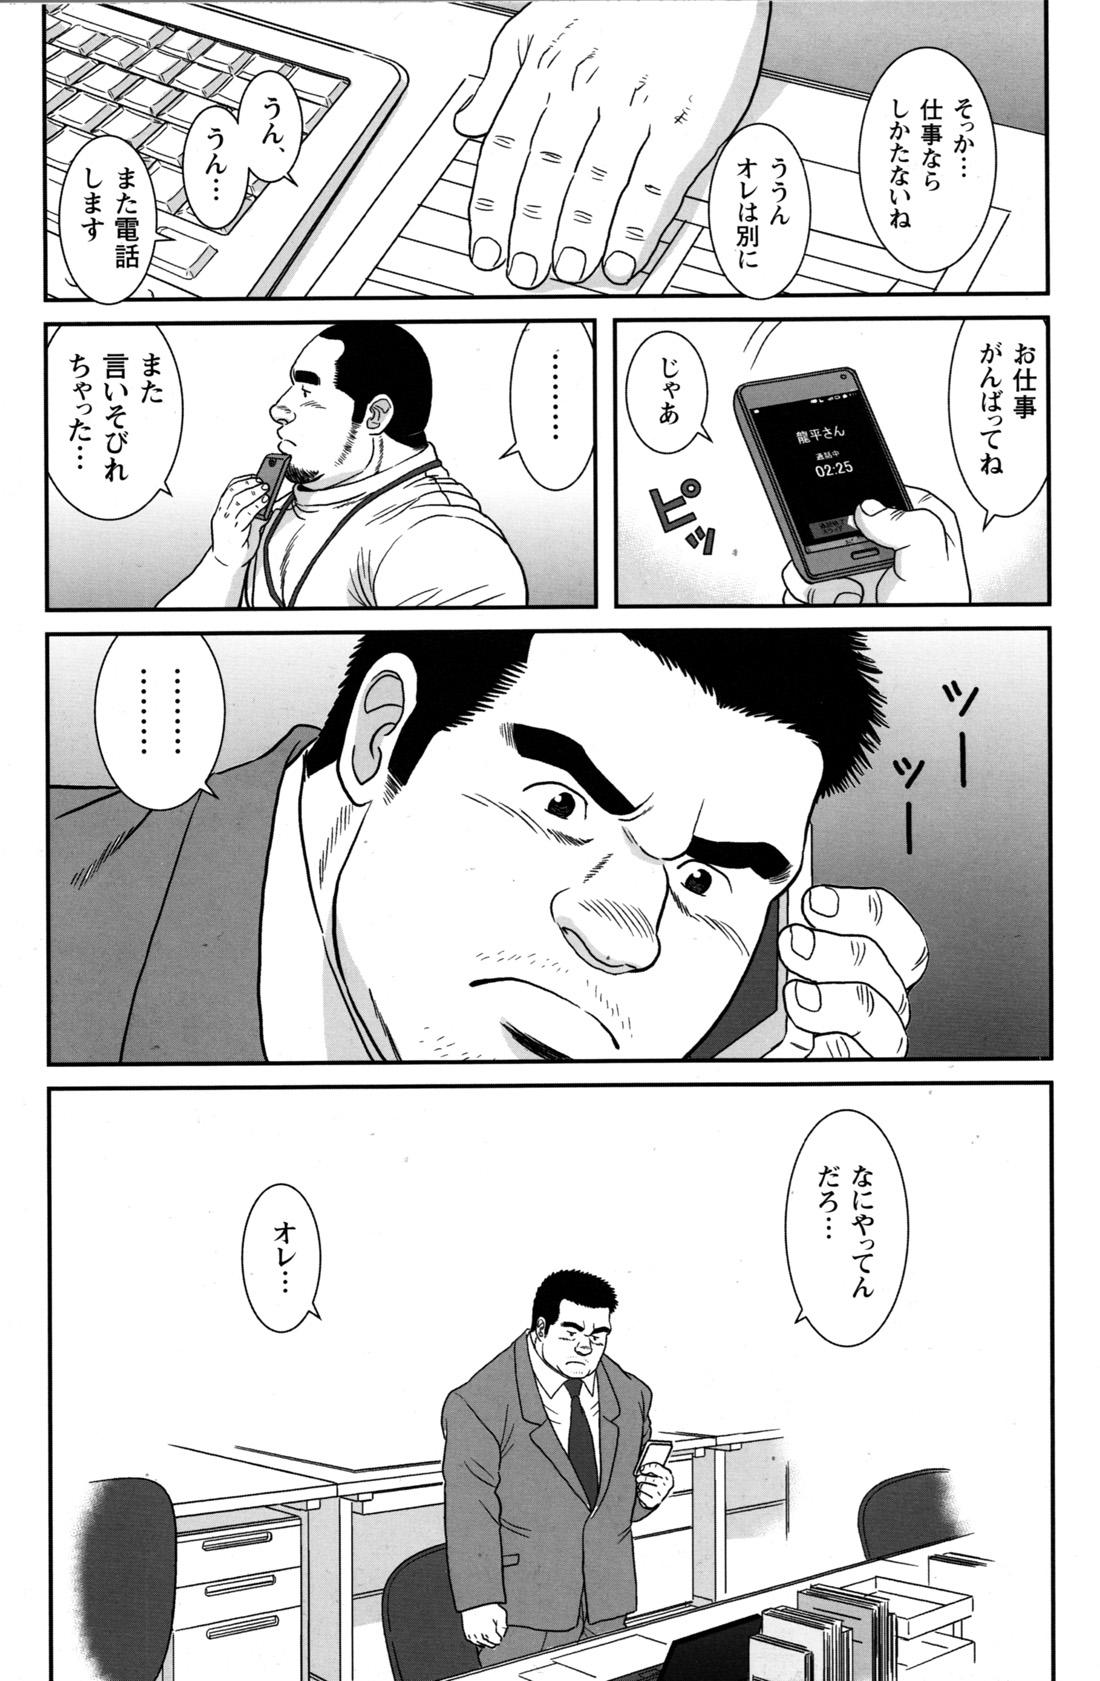 Comic G-men Gaho No.09 Gacchibi Zeme 86